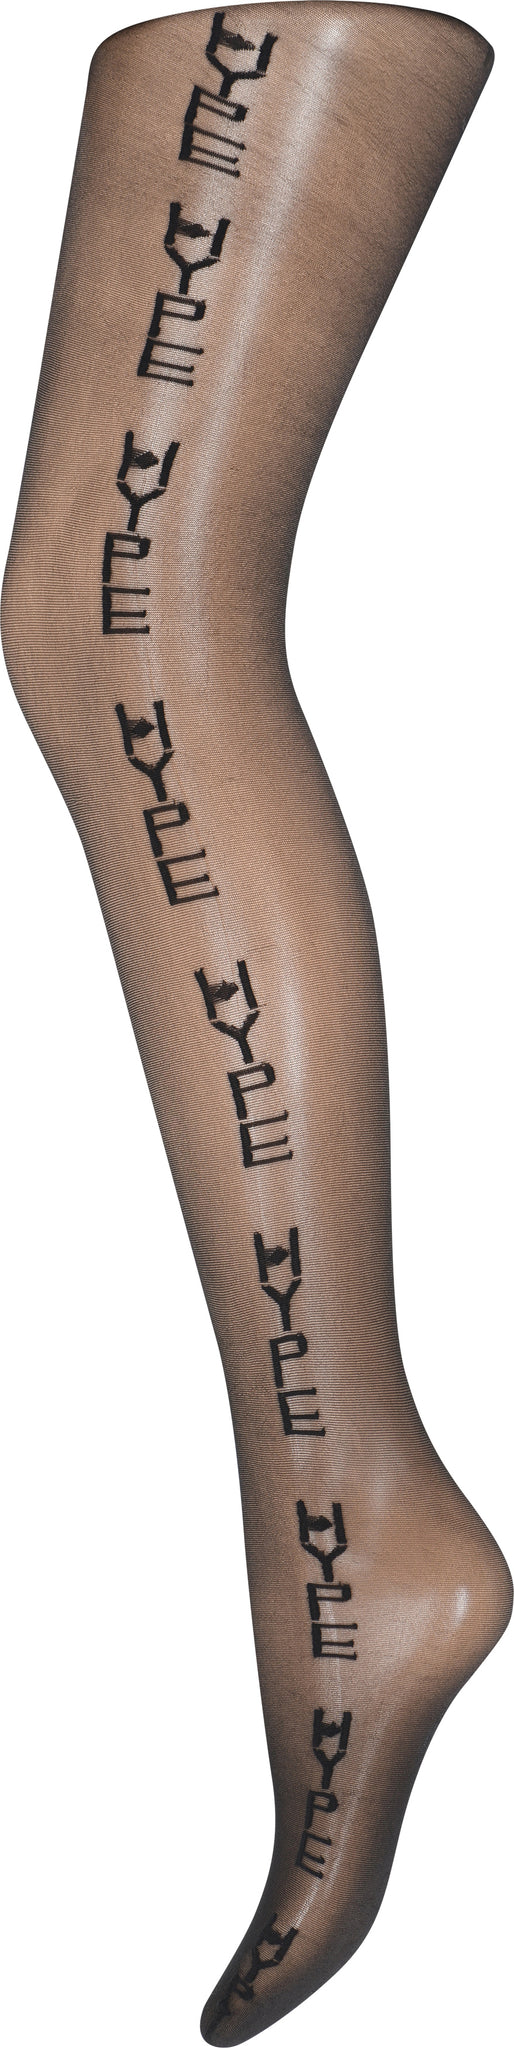 Hype The Detail - Logo leg